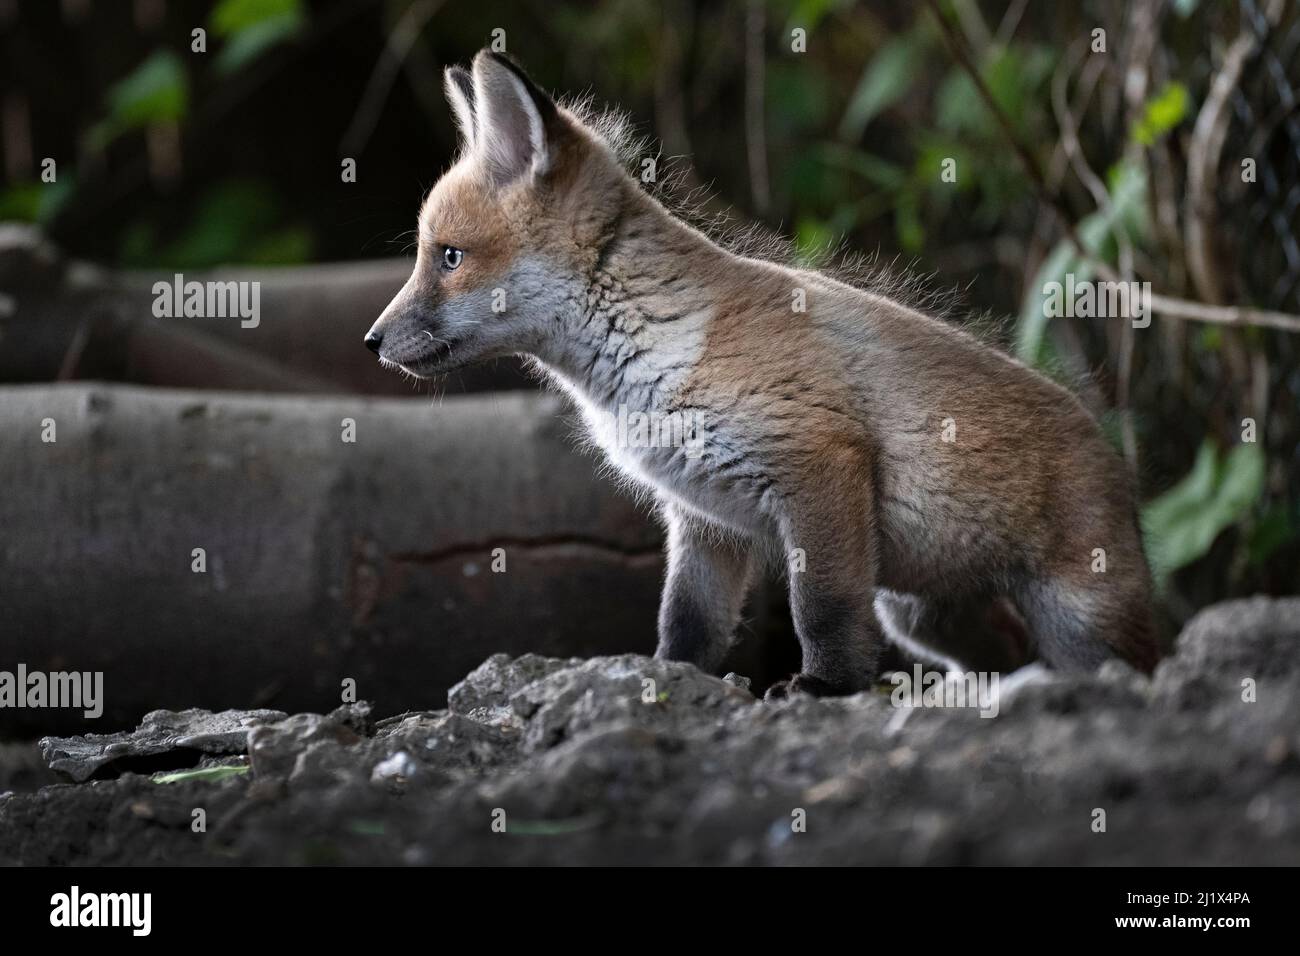 renard roux (Vulpes vulpes) cub à l'entrée du den on allotissement, nord de Londres, Angleterre. Avril 2020. Banque D'Images